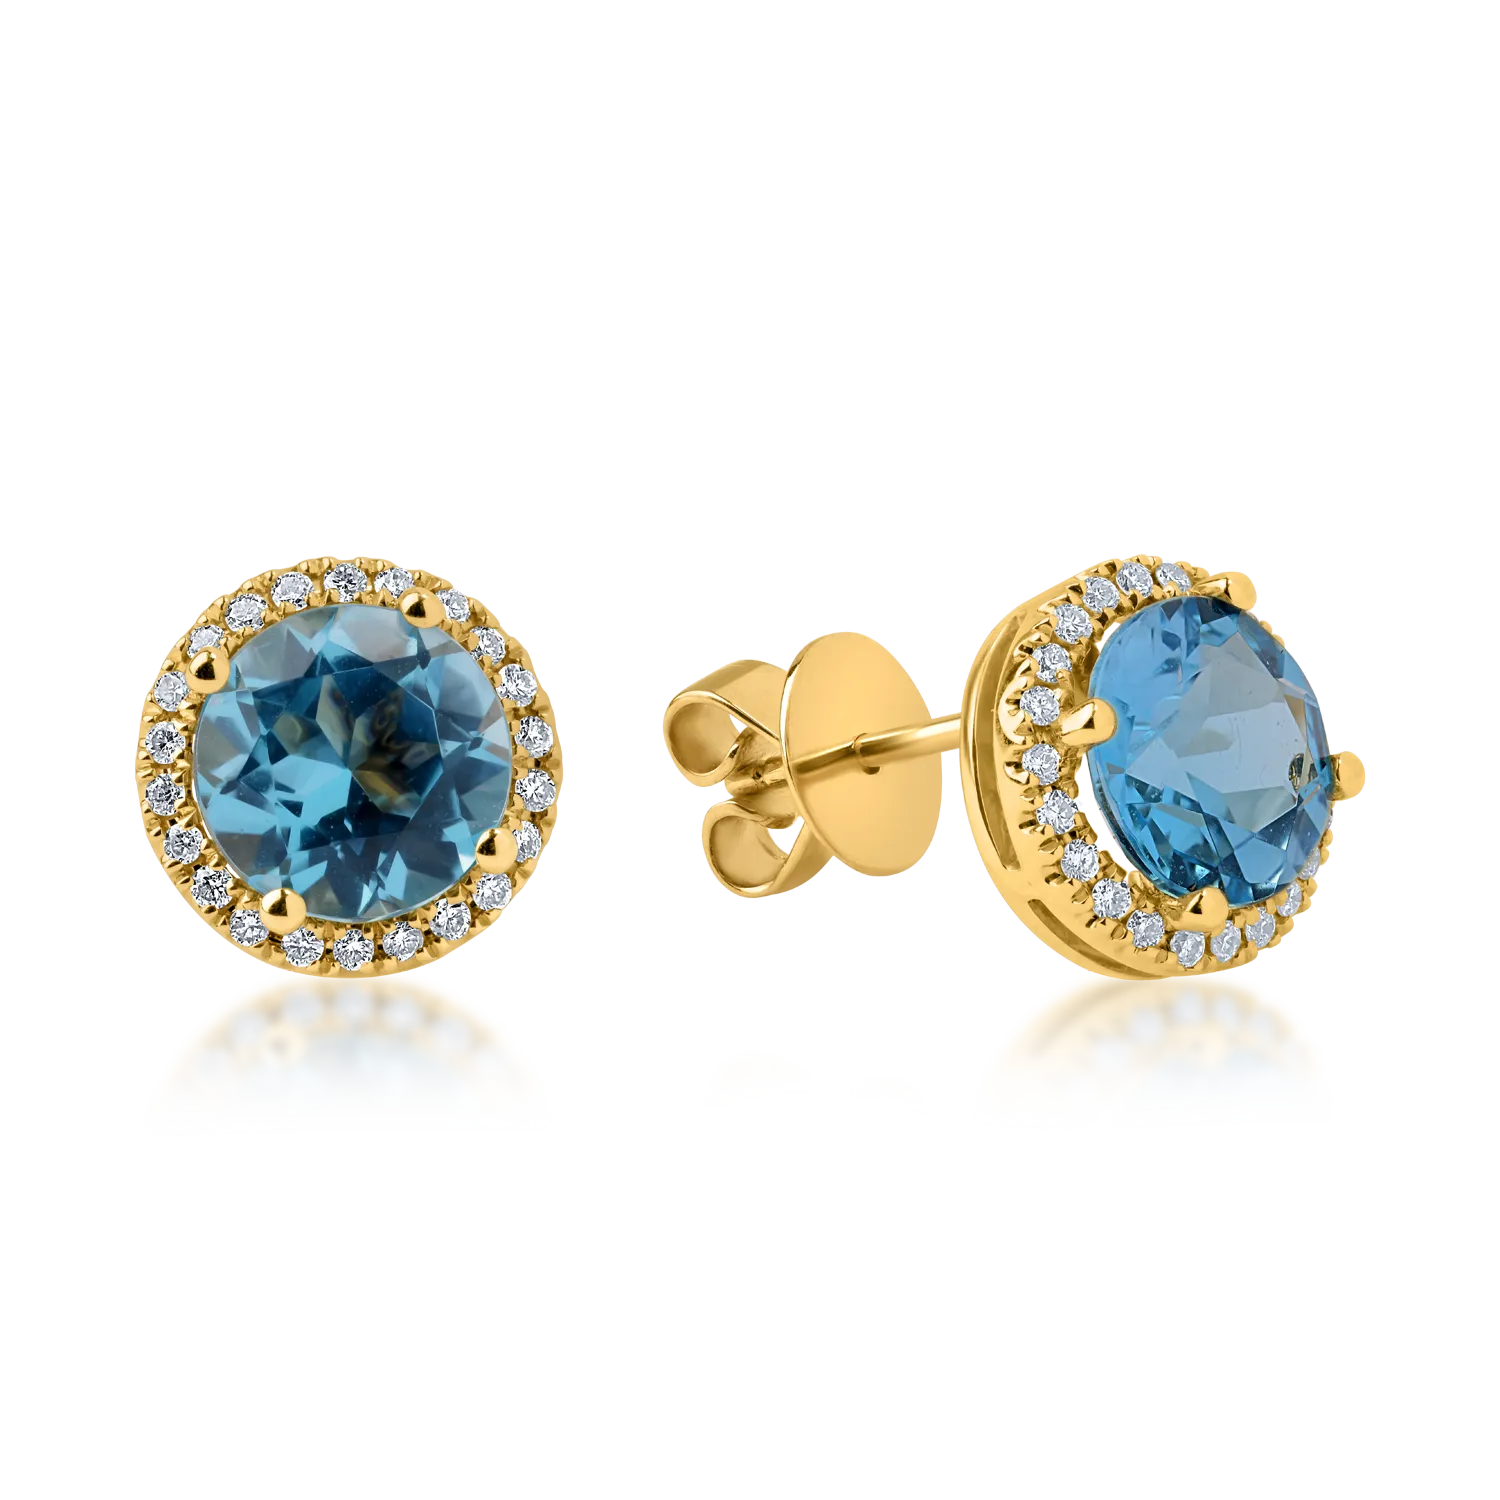 Cercei din aur galben cu topaze albastre de 3.4ct si diamante de 0.2ct